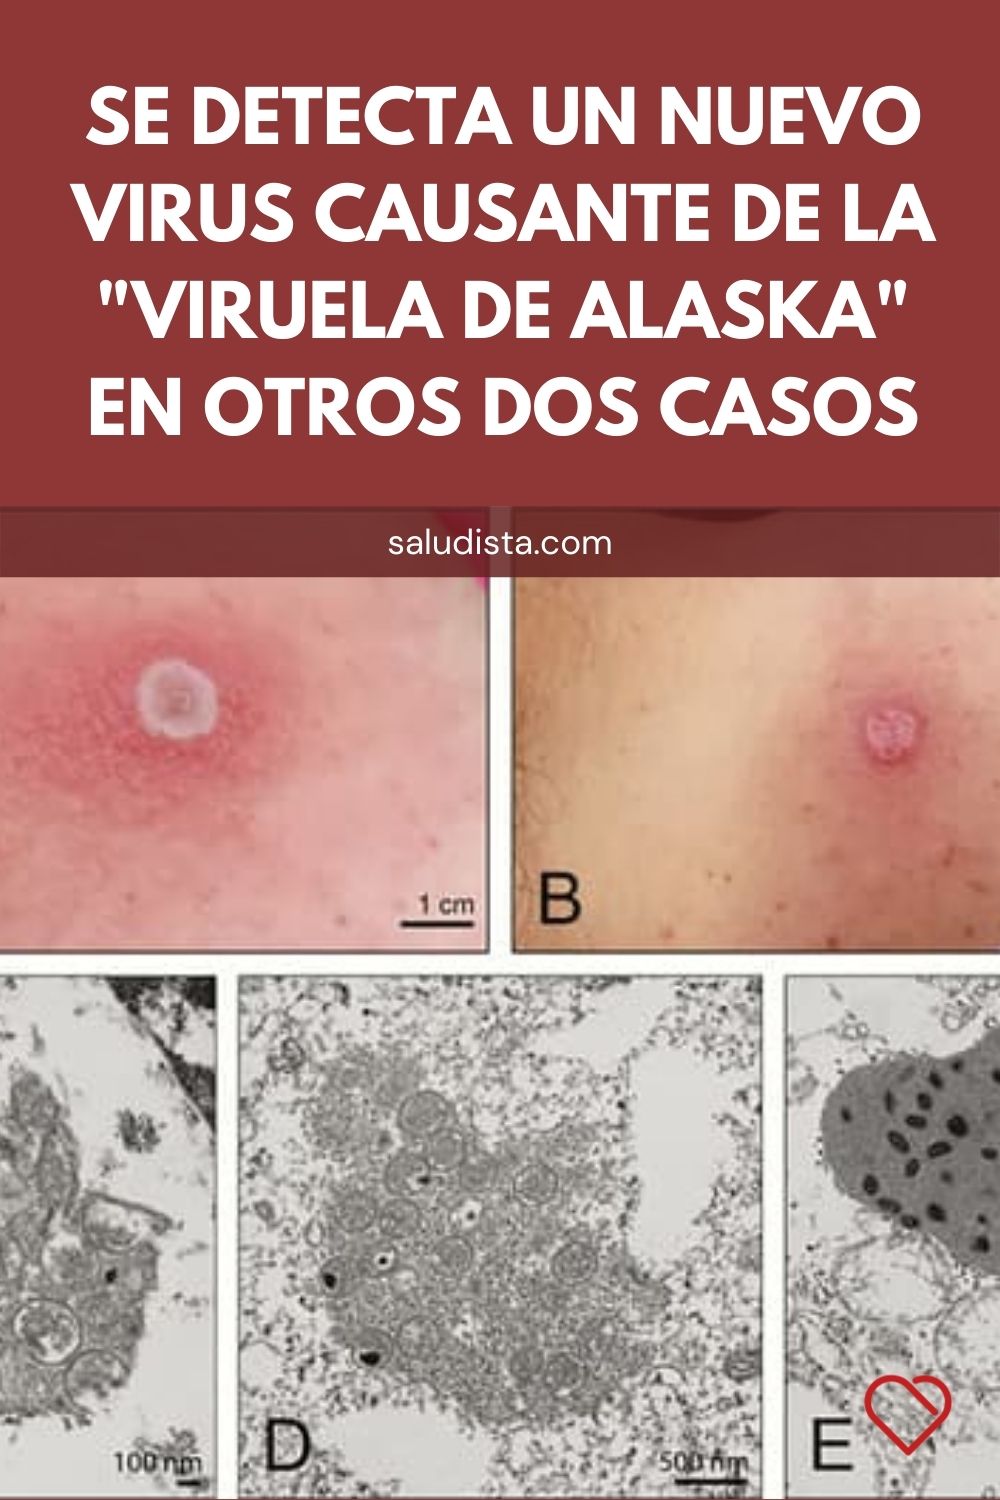 Se detecta un nuevo virus causante de la "viruela de Alaska" en otros dos casos